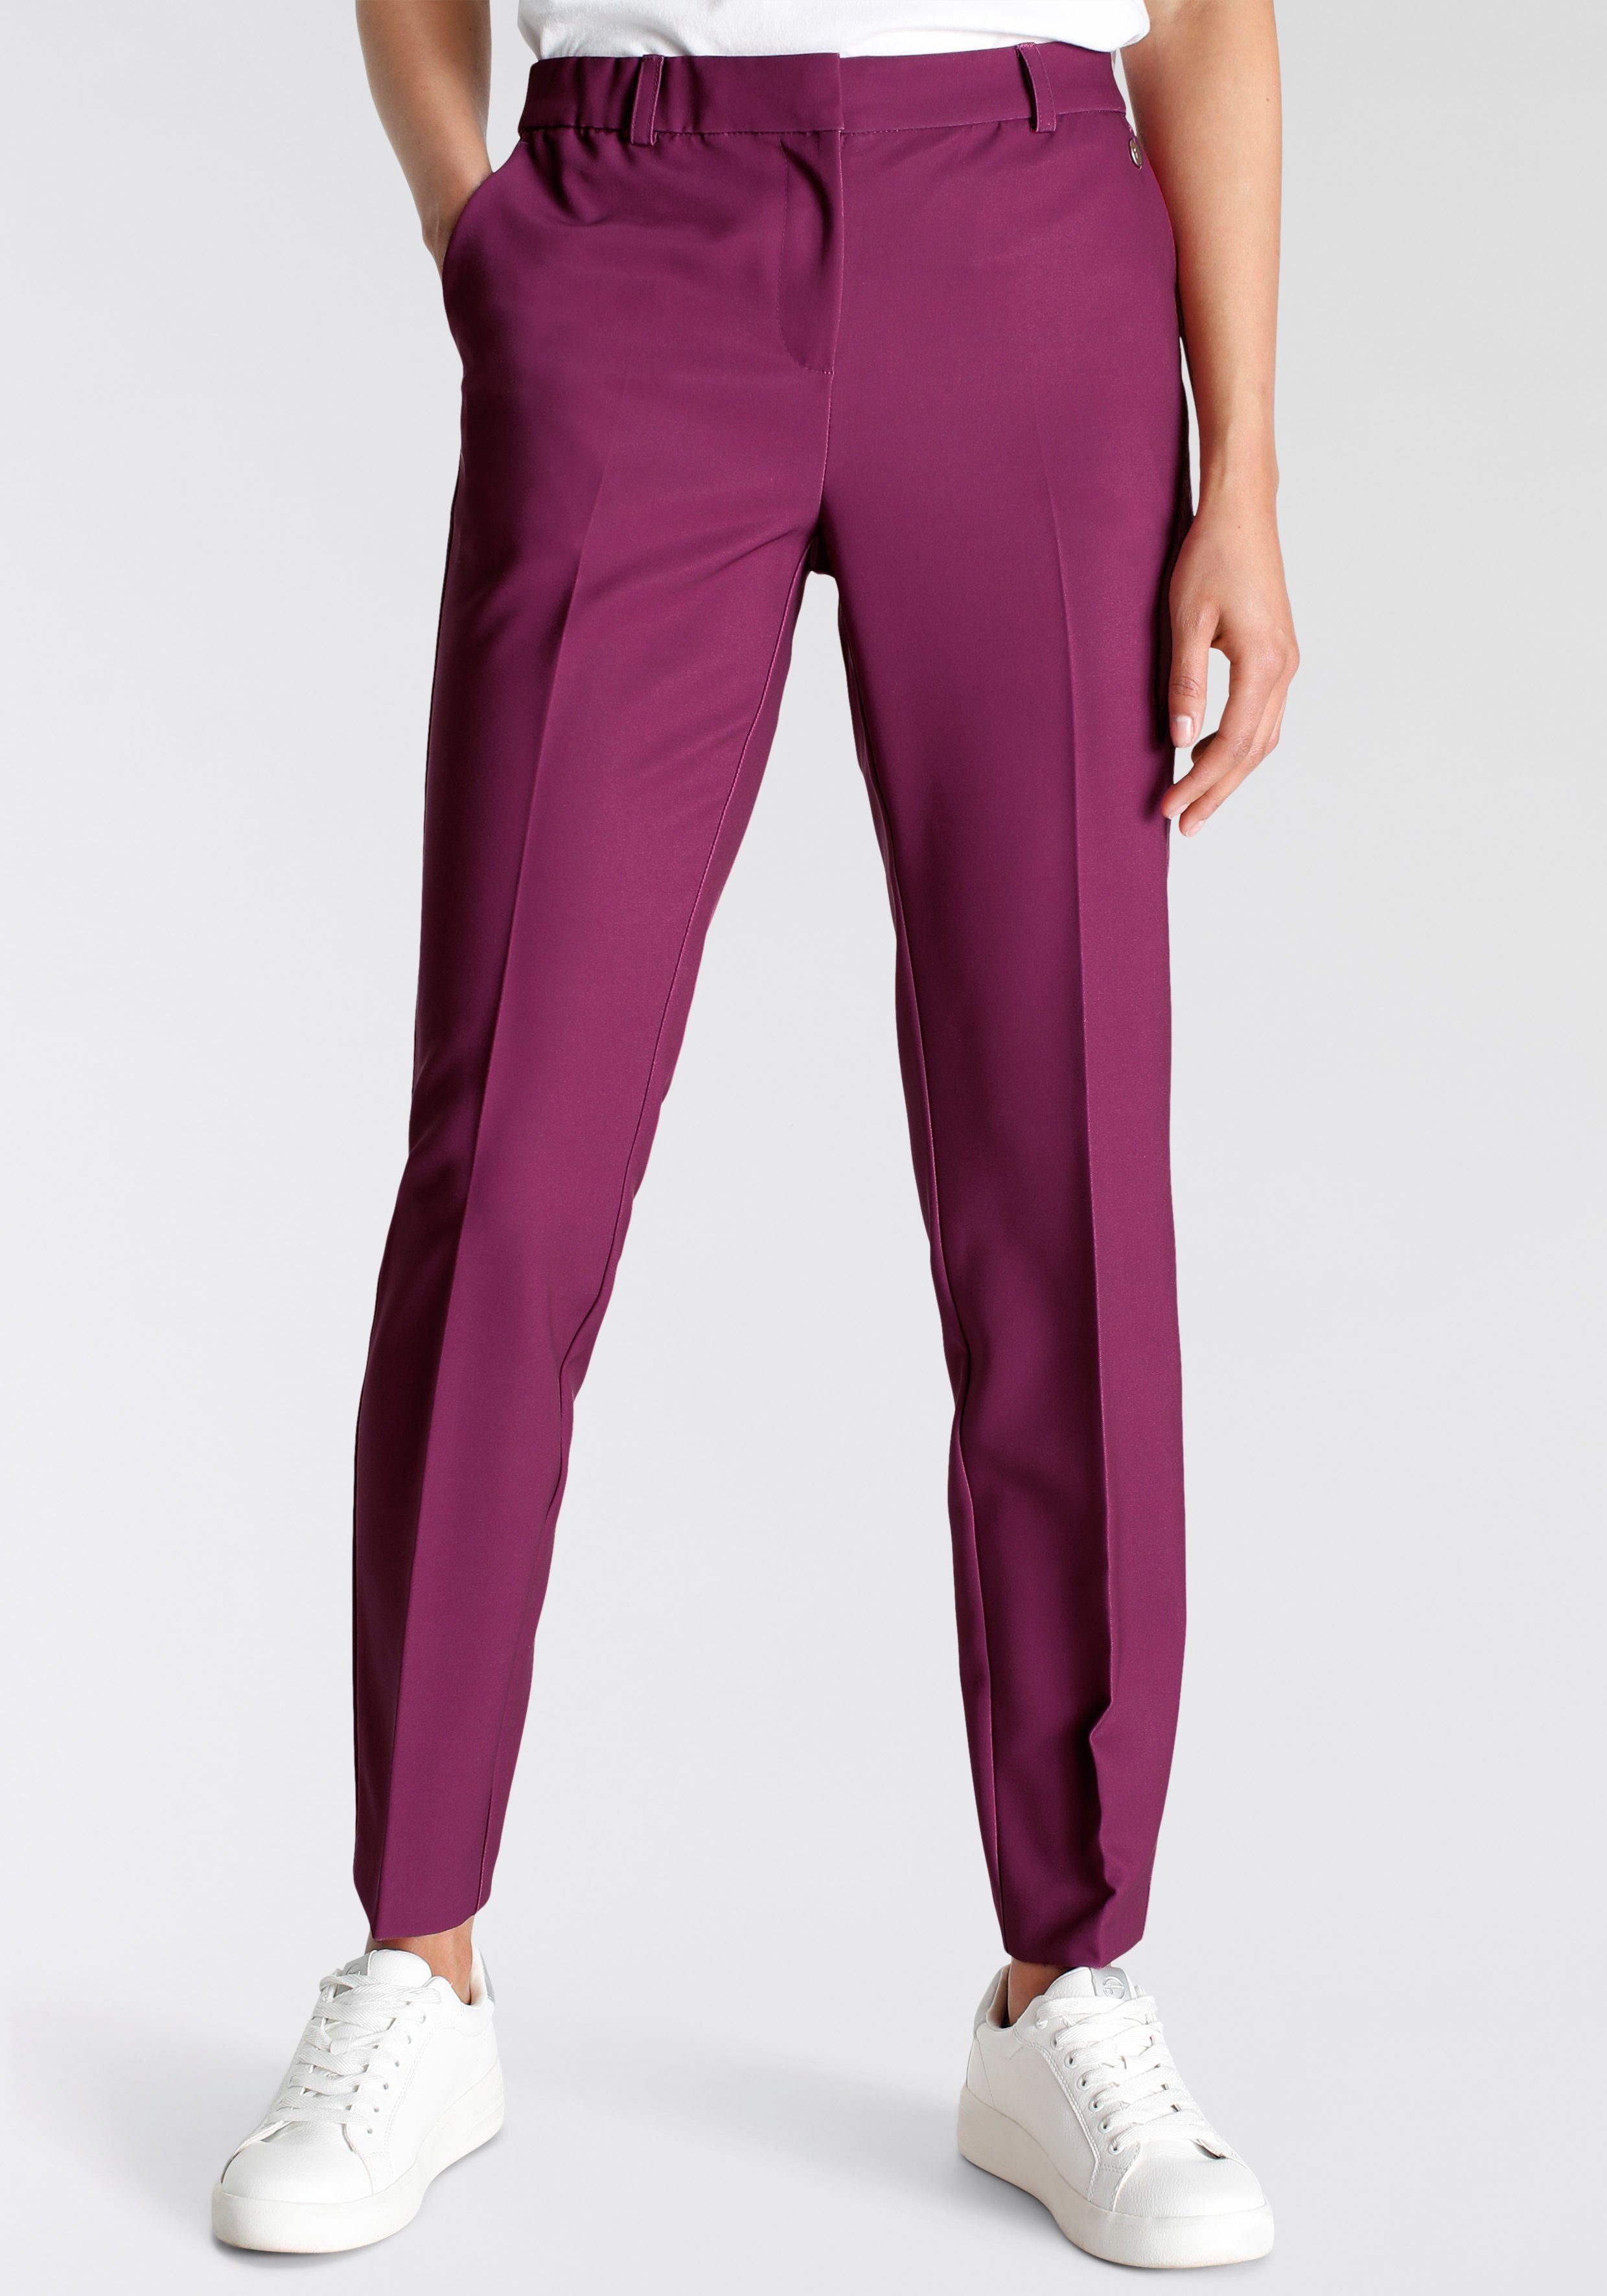 NU 20% KORTING: Tamaris Pantalon in trendkleuren nieuwe collectie